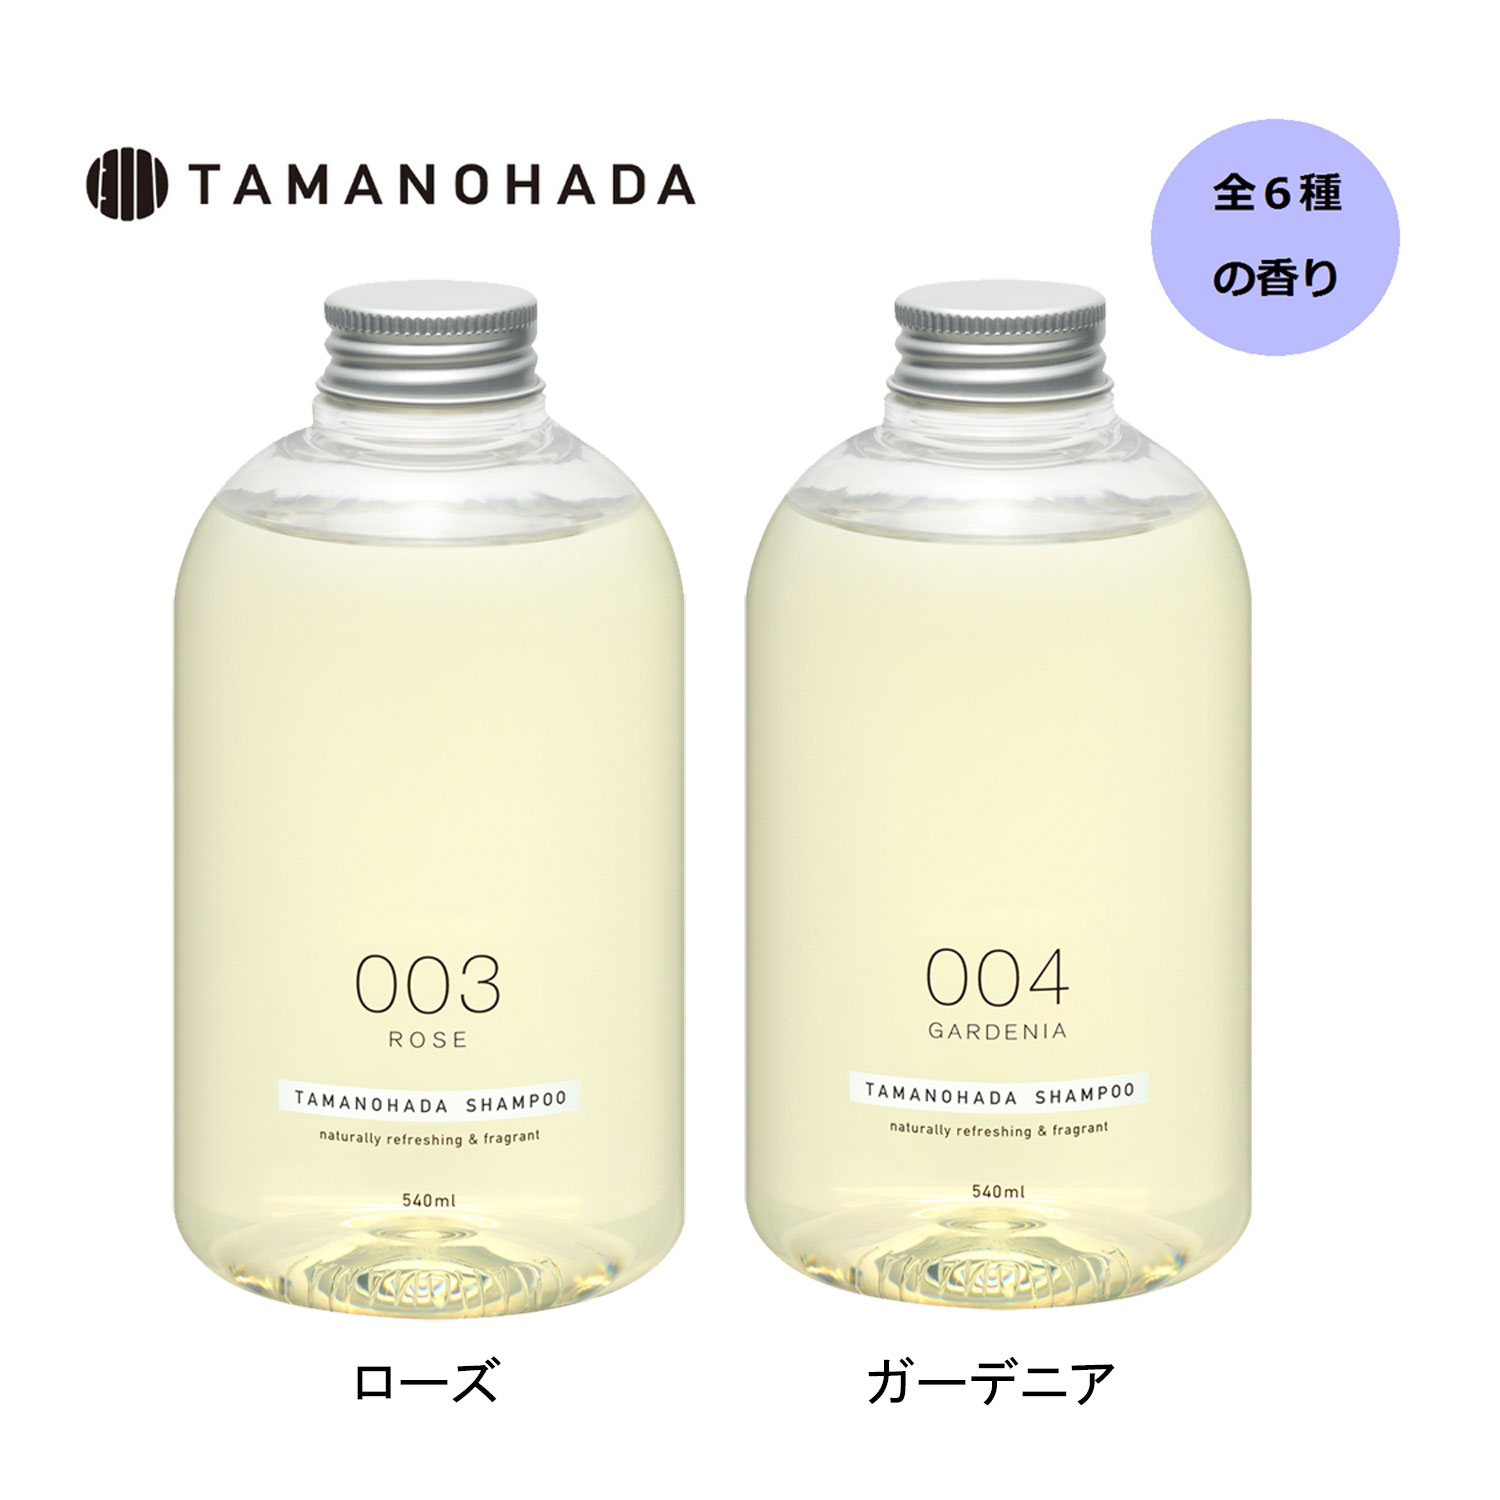 【タマノハダ/TAMANOHADA】TAMANOHADA SHAMPOO画像